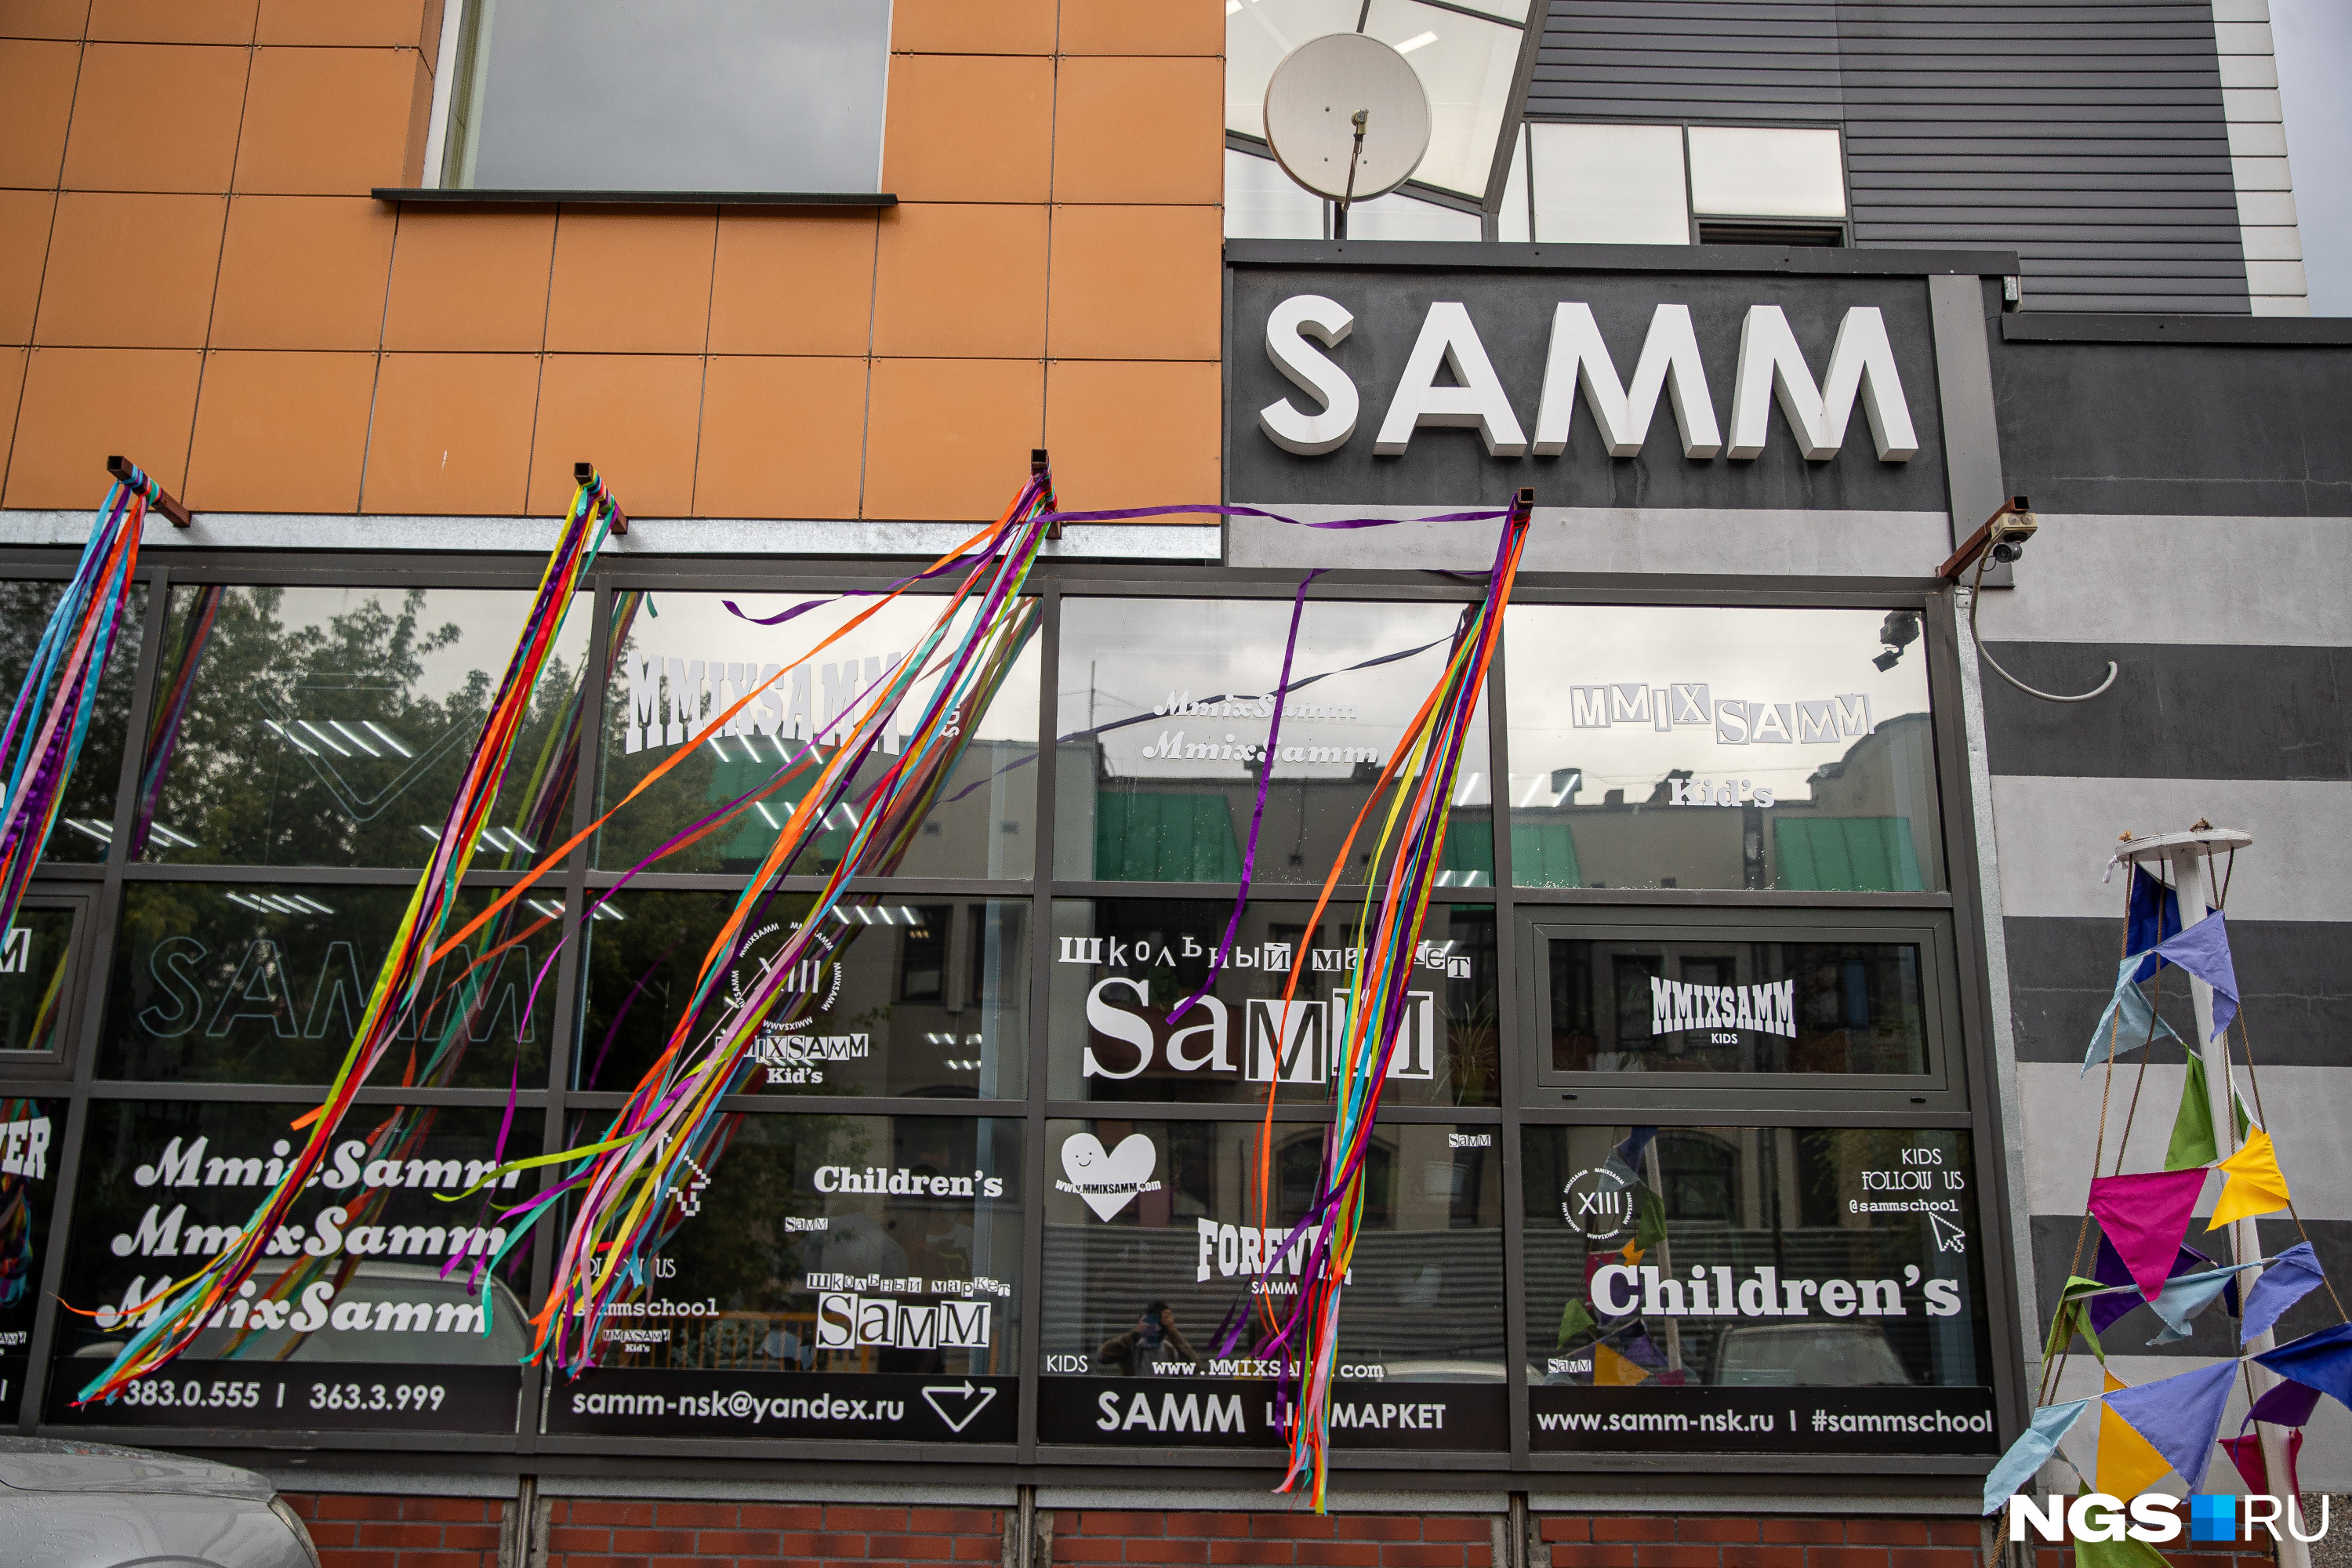 Жалобы на компанию SAMM поступают в редакцию уже не первый год